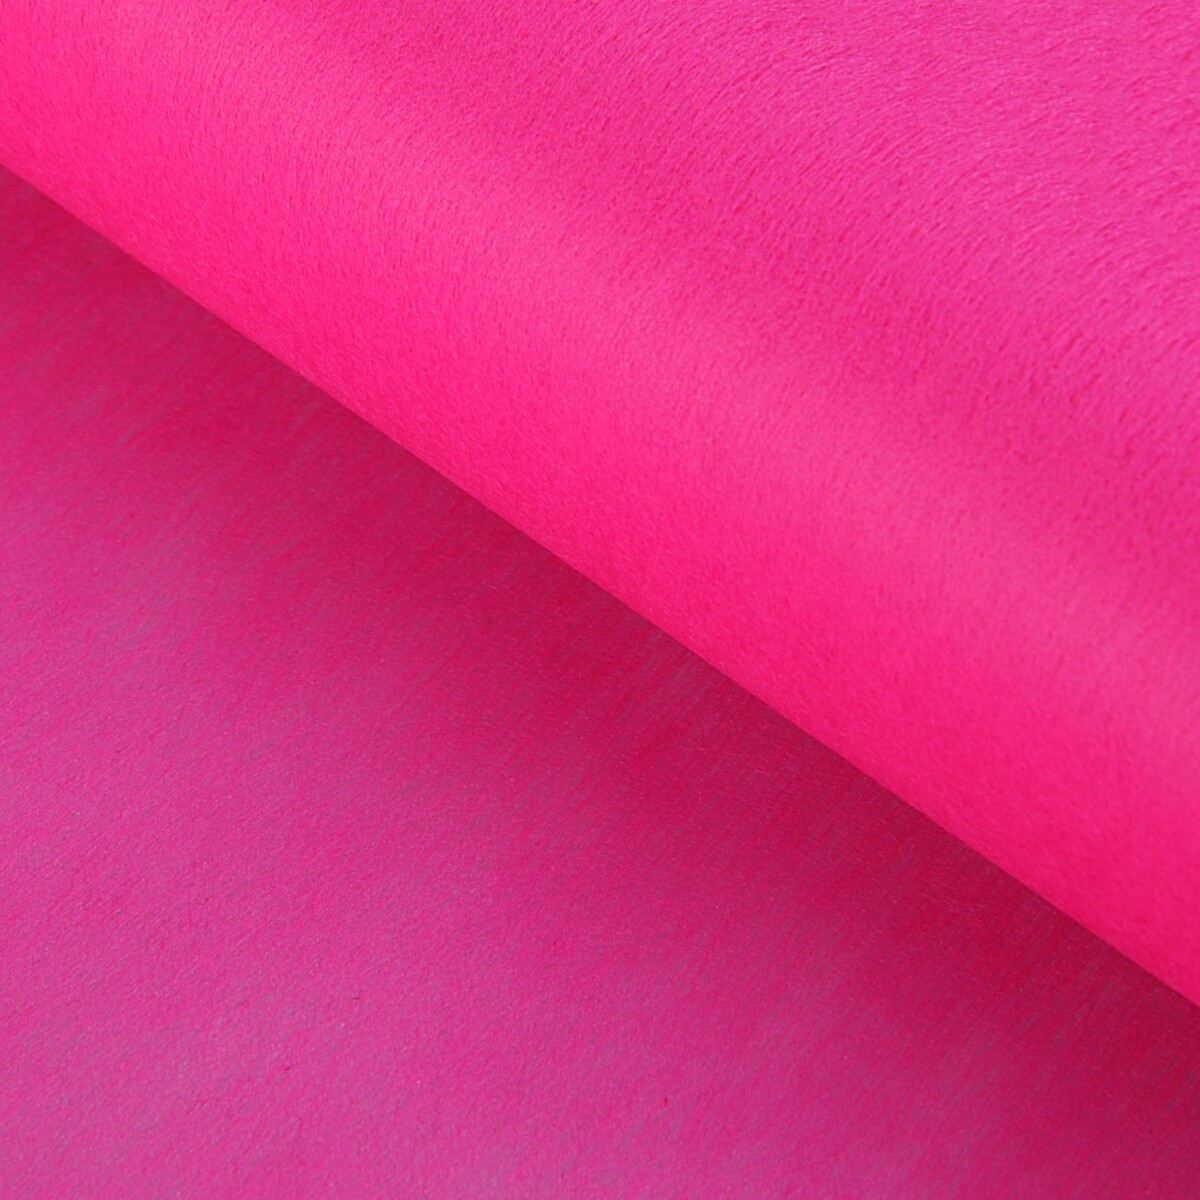 Фетр для упаковок и поделок, однотонный, ярко-розовый, однотонный, двусторонний, рулон 1шт., 50 см x 15 м фетр для упаковок и поделок однотонный оливковый двусторонний зеленый рулон 1шт 50 см x 15 м